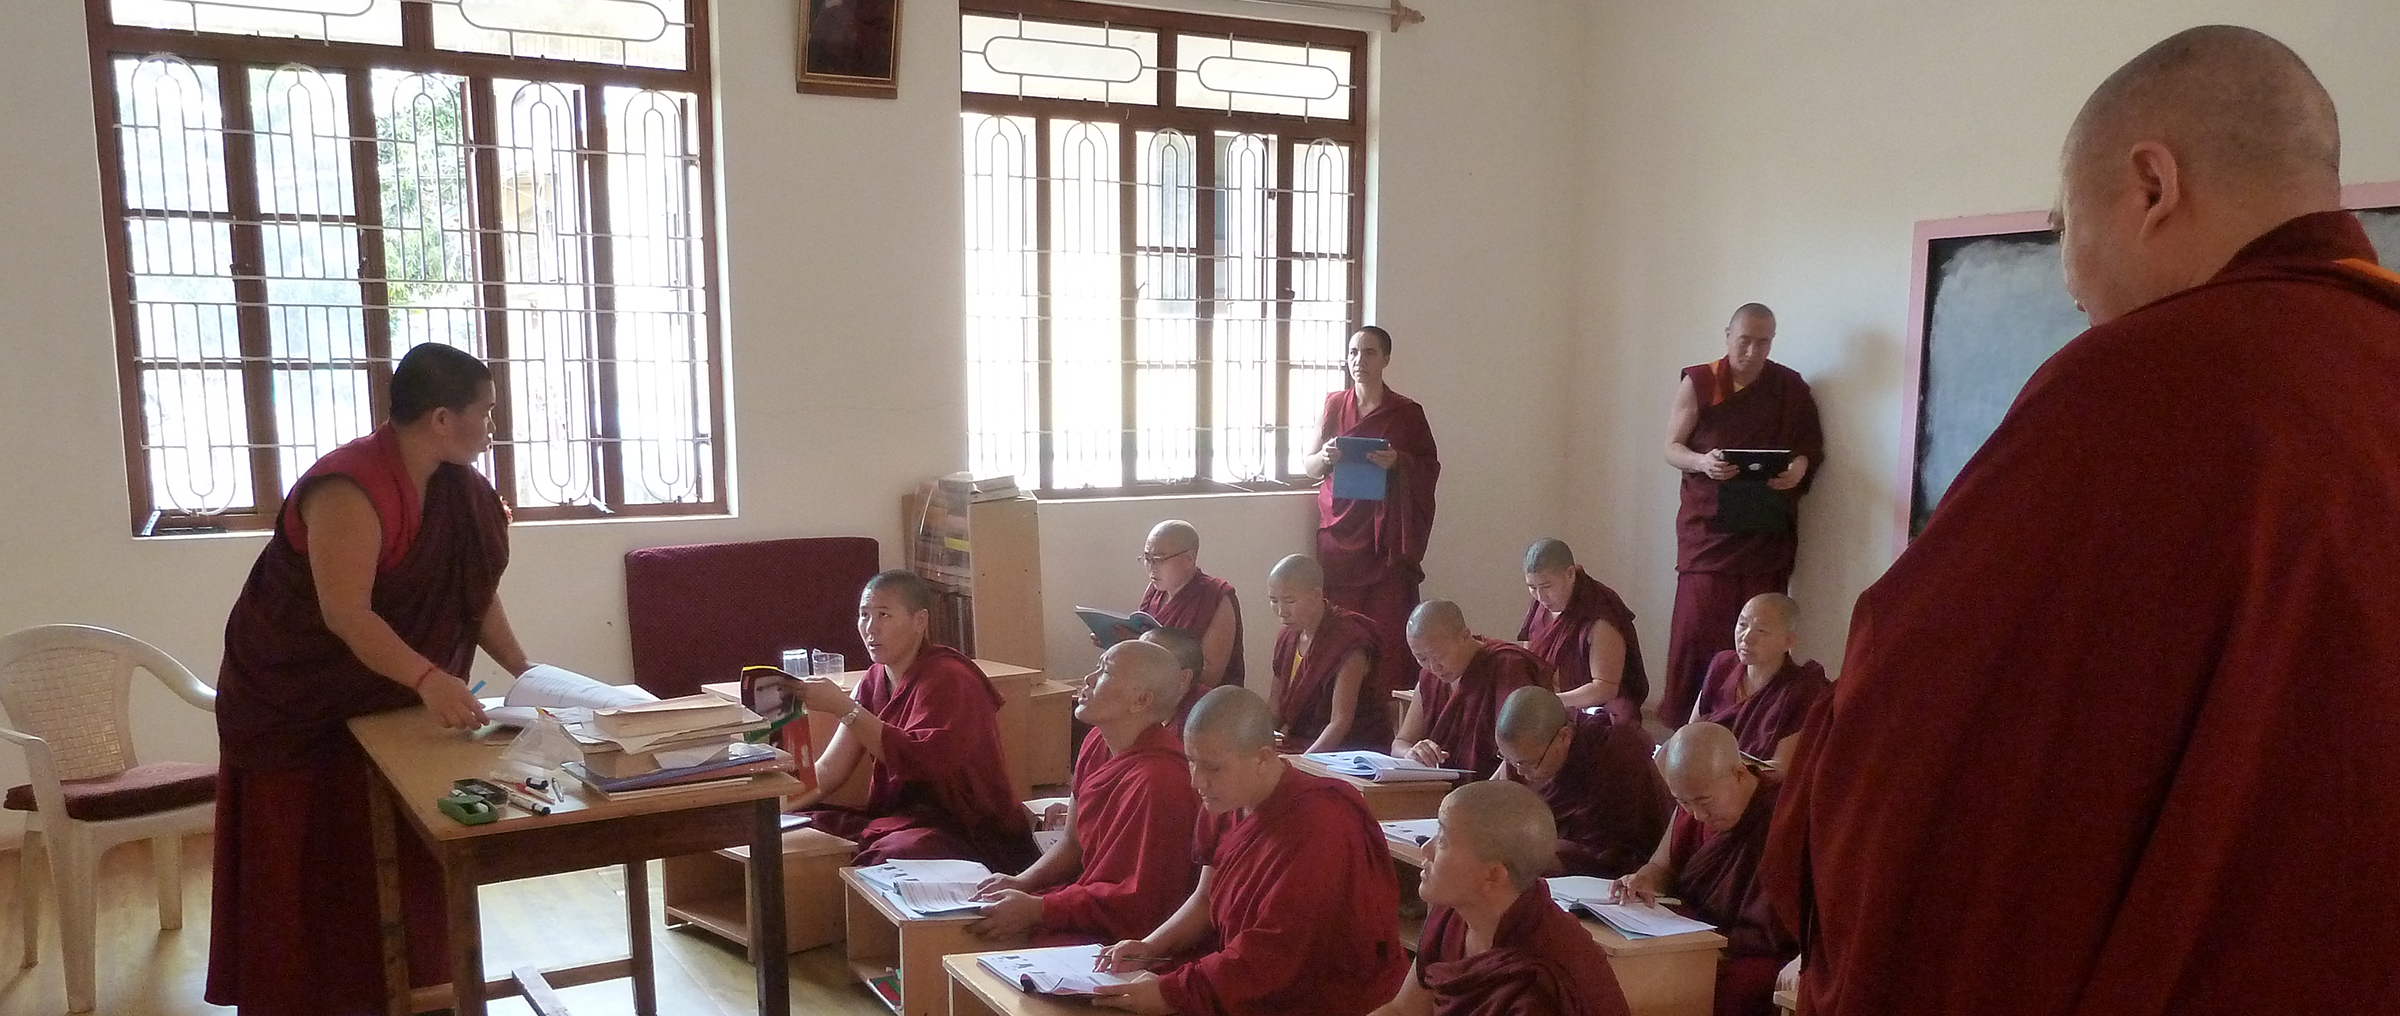 tibetische nonnen im exil